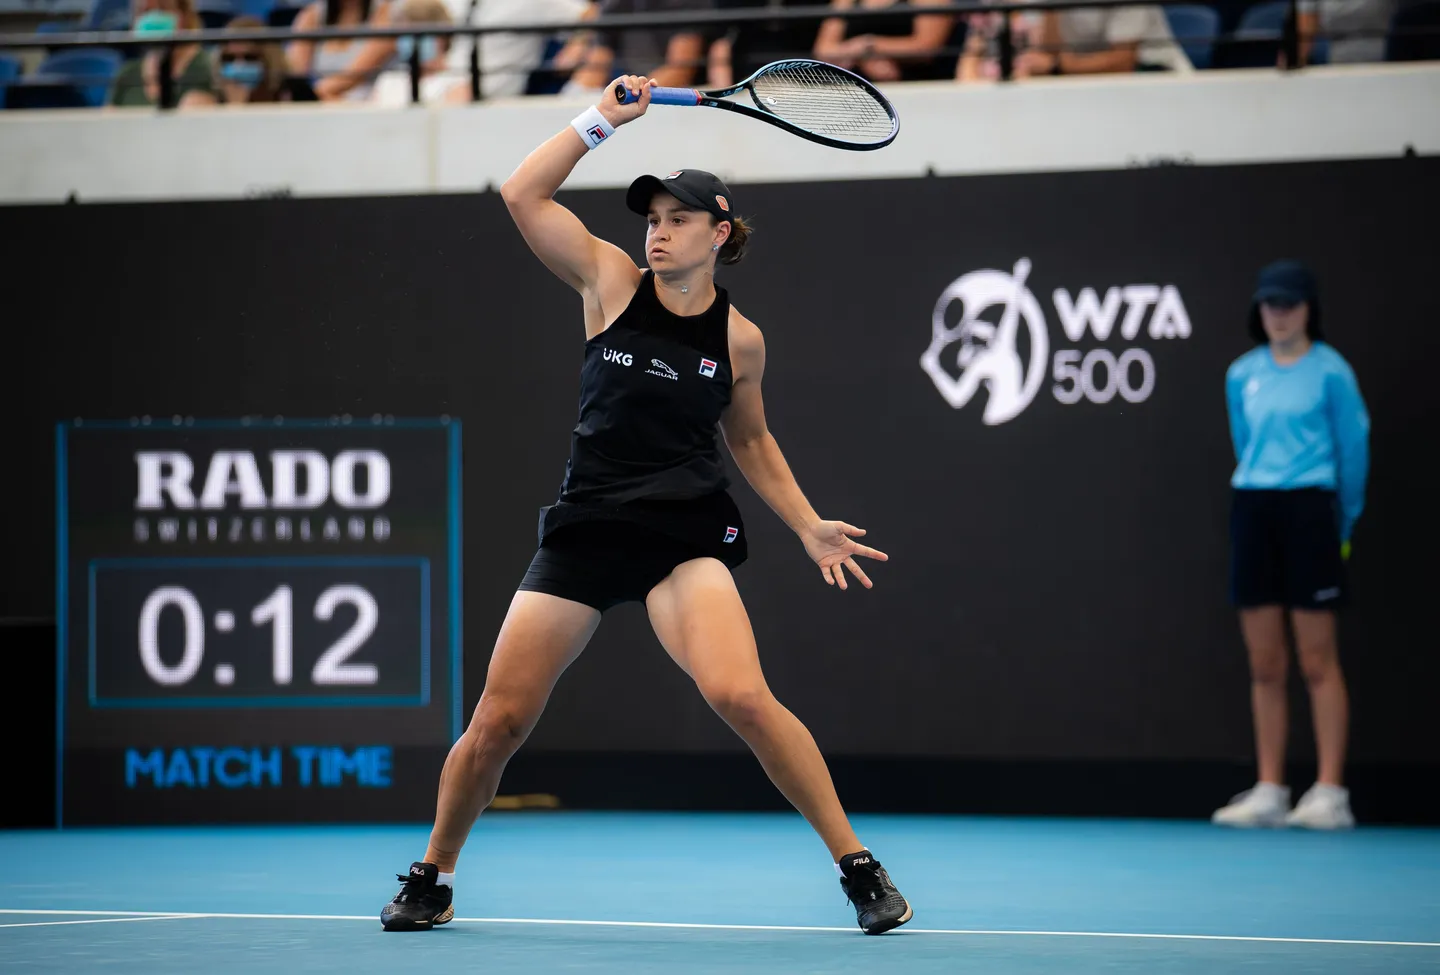 WTA Australian Open: Women's Singles Preview